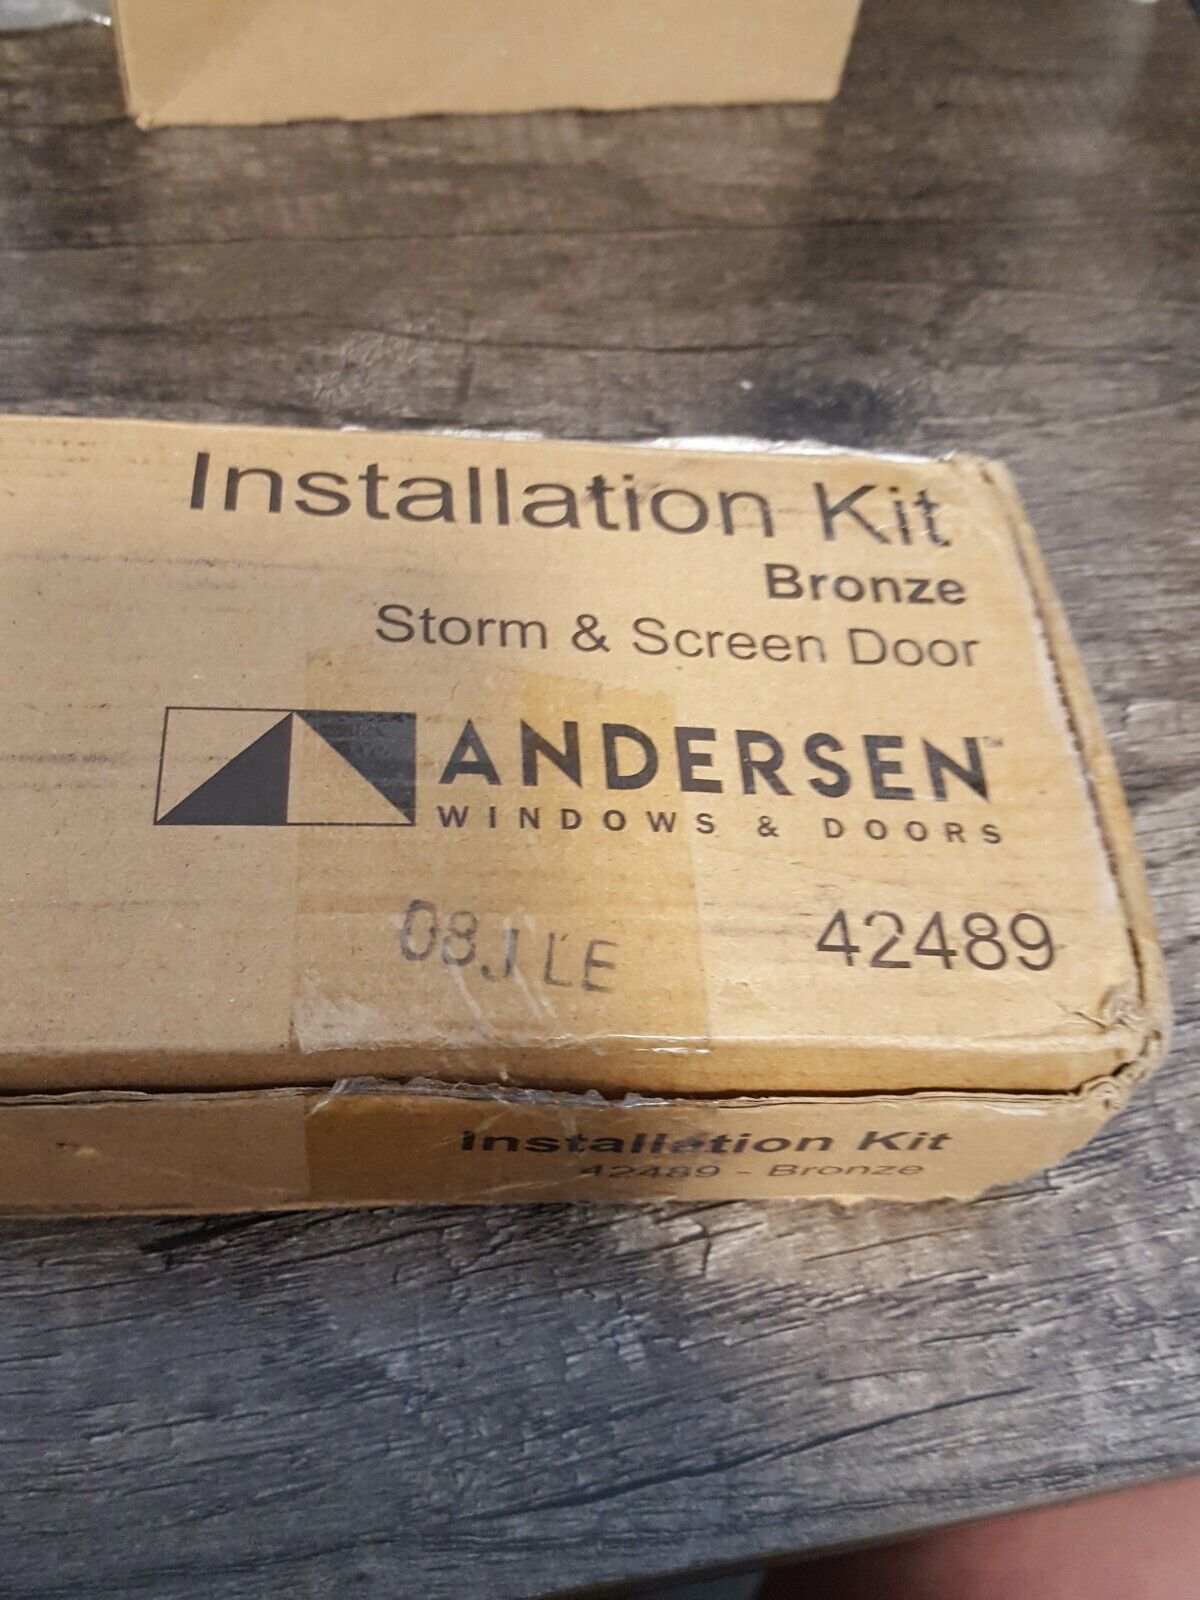 Andersen Windows & Doors - Storm & Screen Door Installation Kit - Bronze - 42489